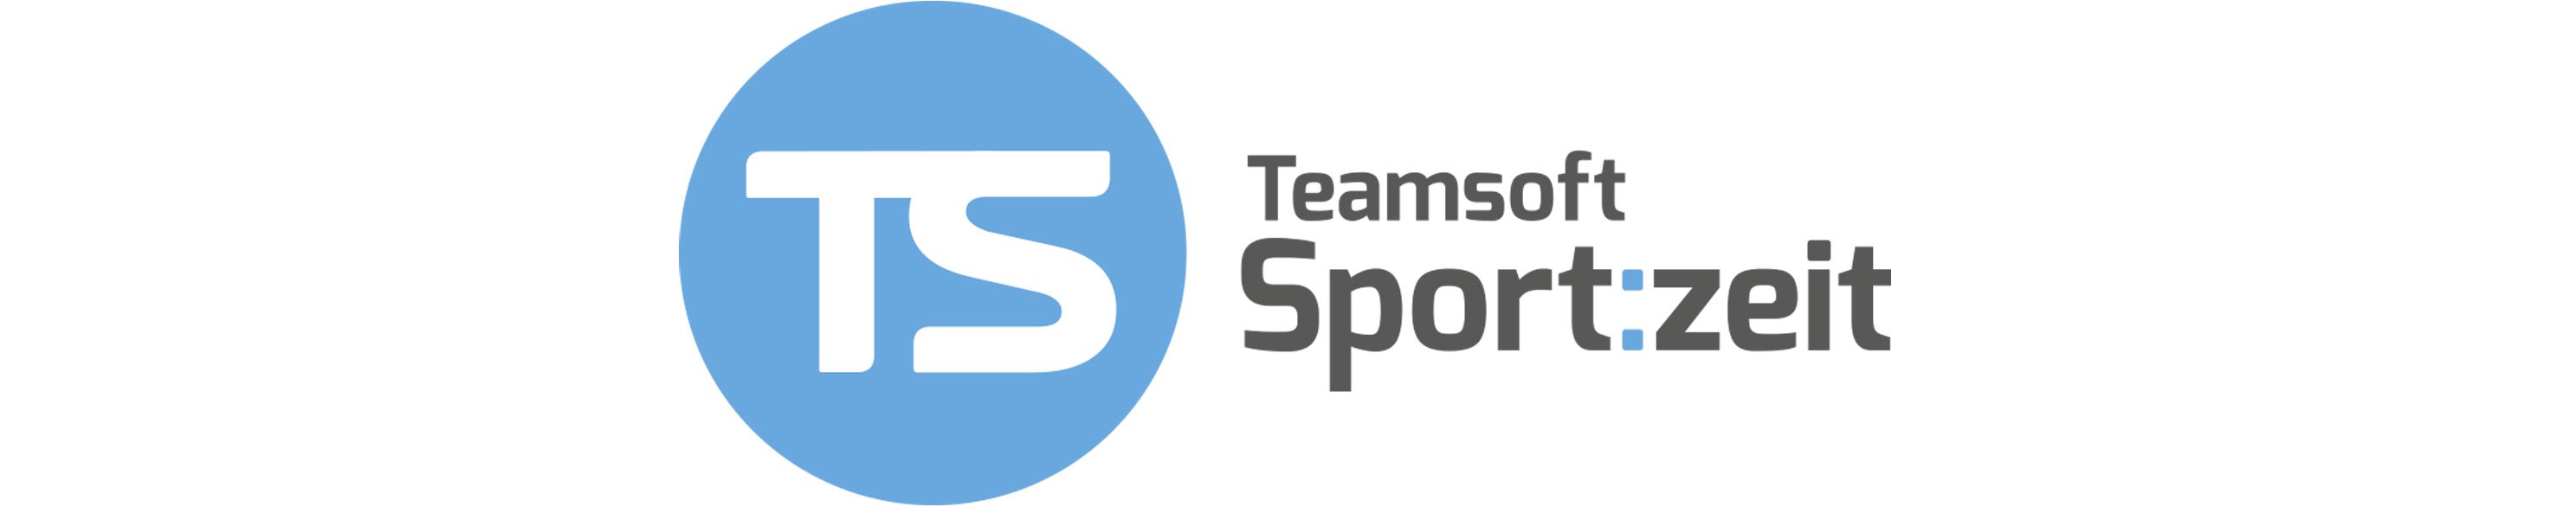 teamsoft_sportzeit